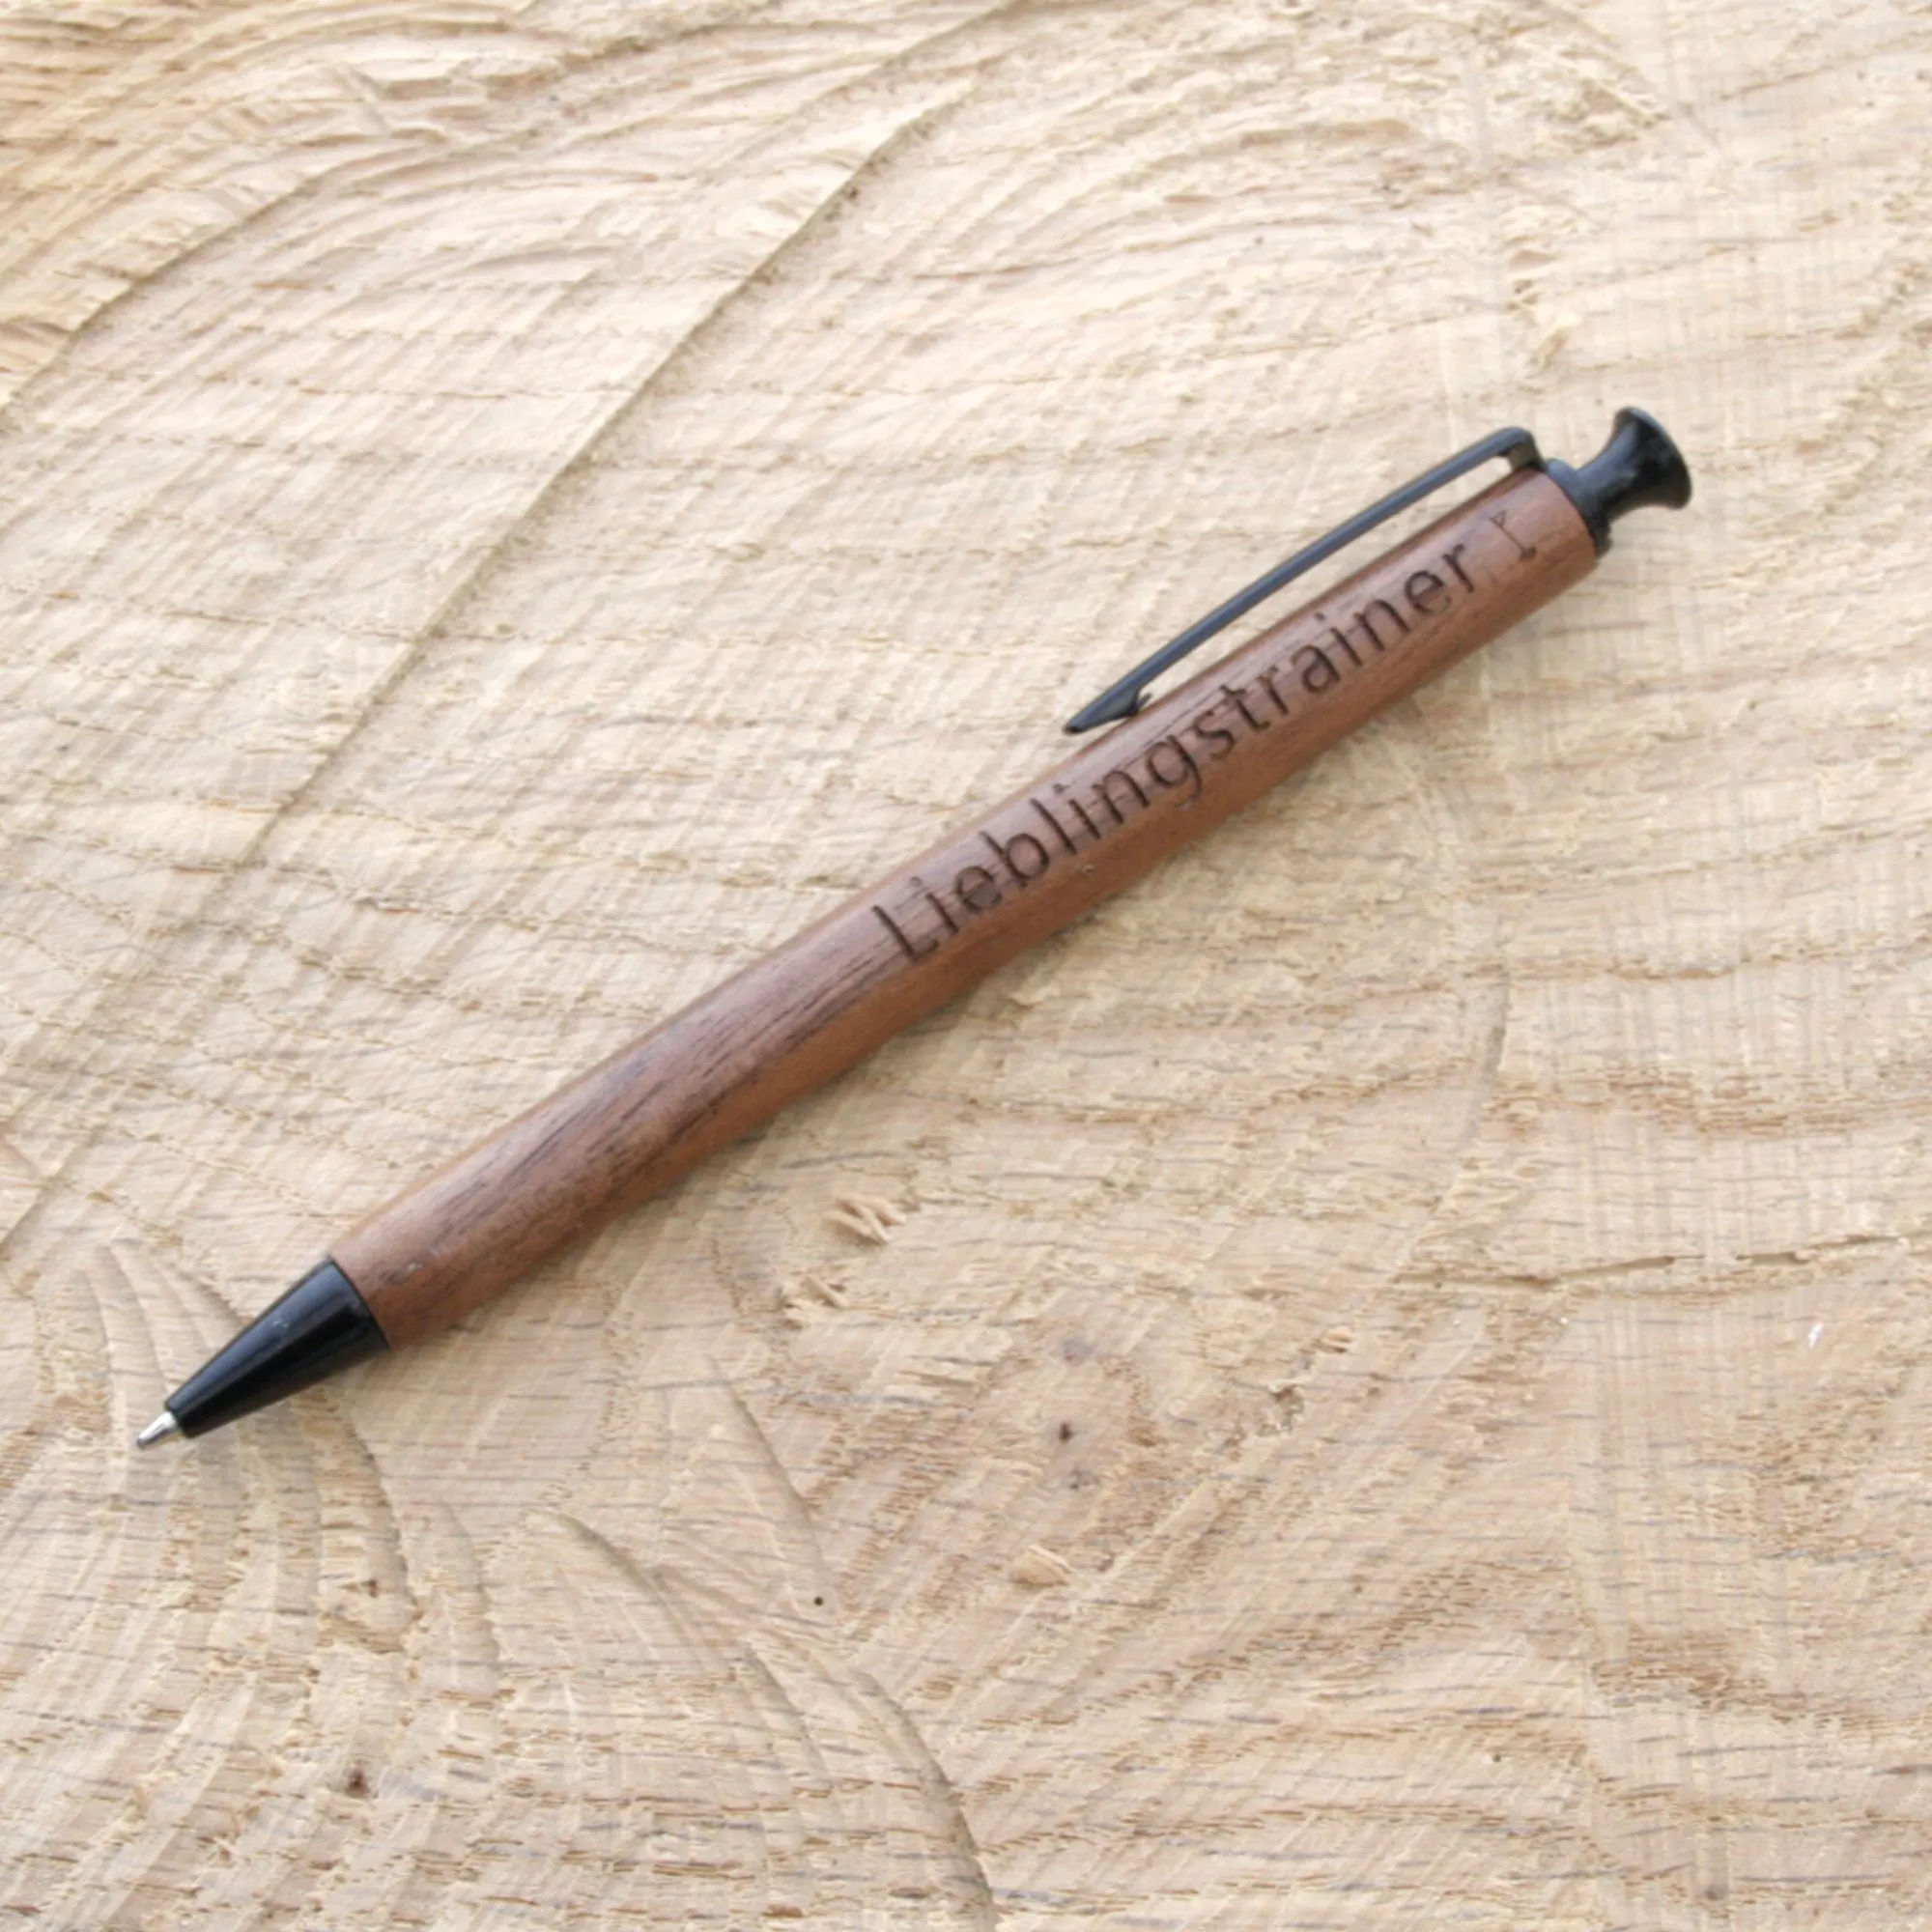 Kugelschreiber aus Nussbaumholz mit Namen oder Logo